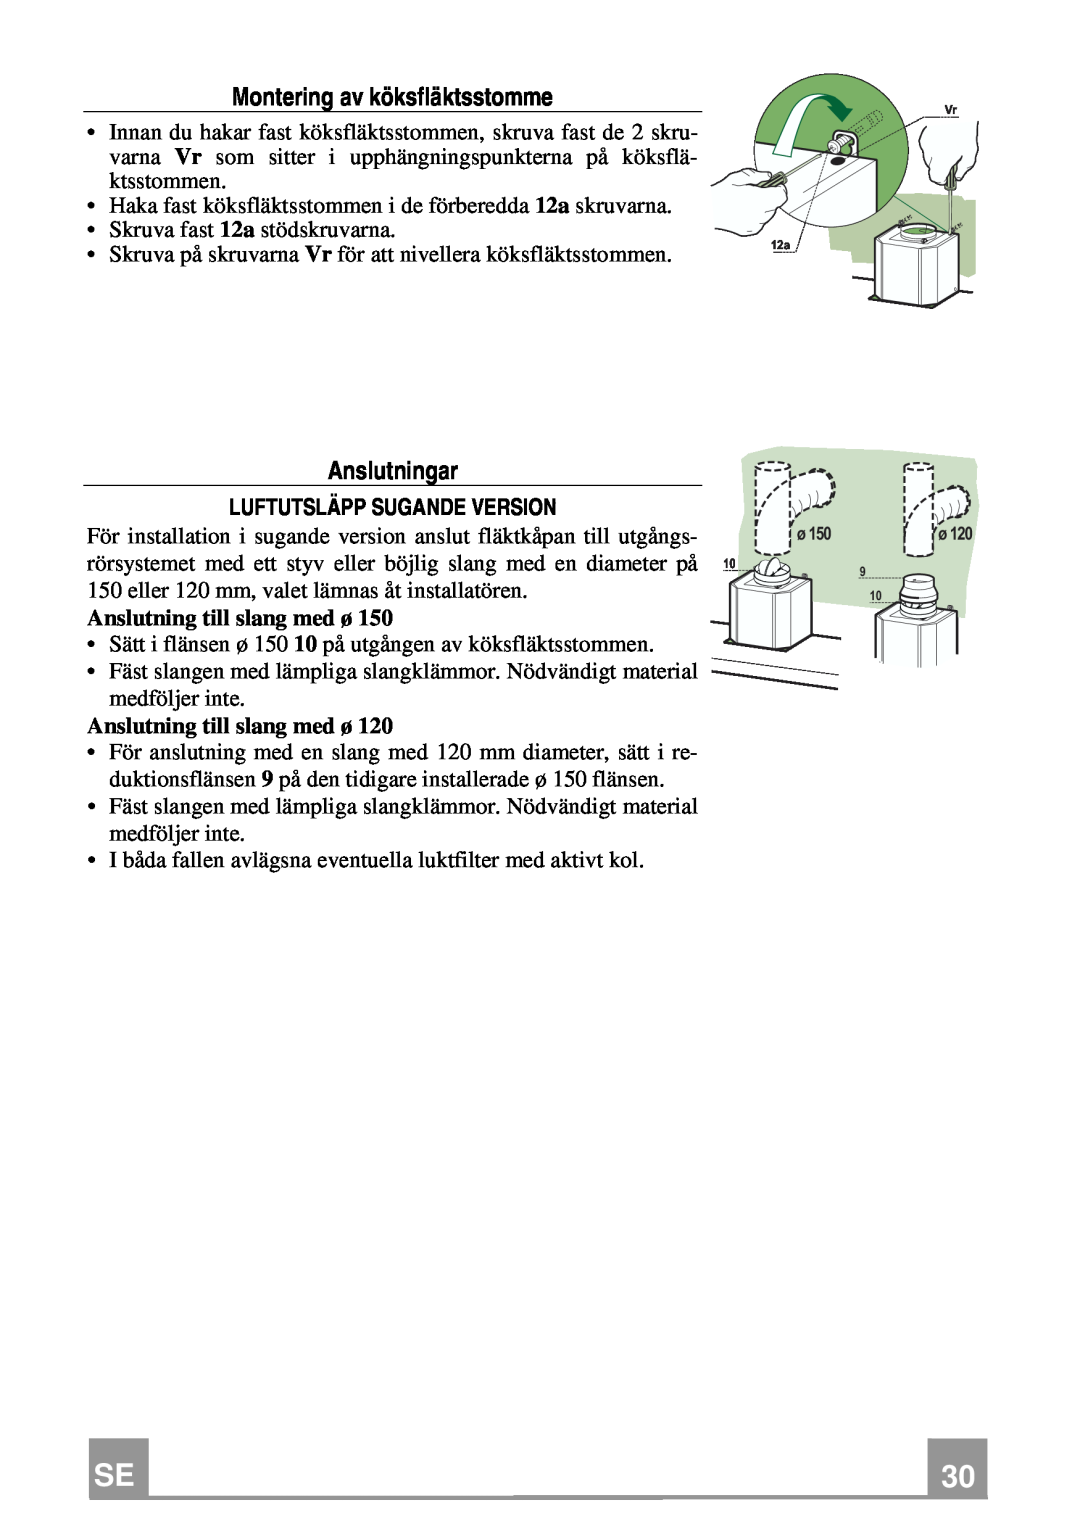 Franke Consumer Products FCH 906 XS ECS manual Montering av köksfläktsstomme, Anslutningar, Luftutsläpp Sugande Version 